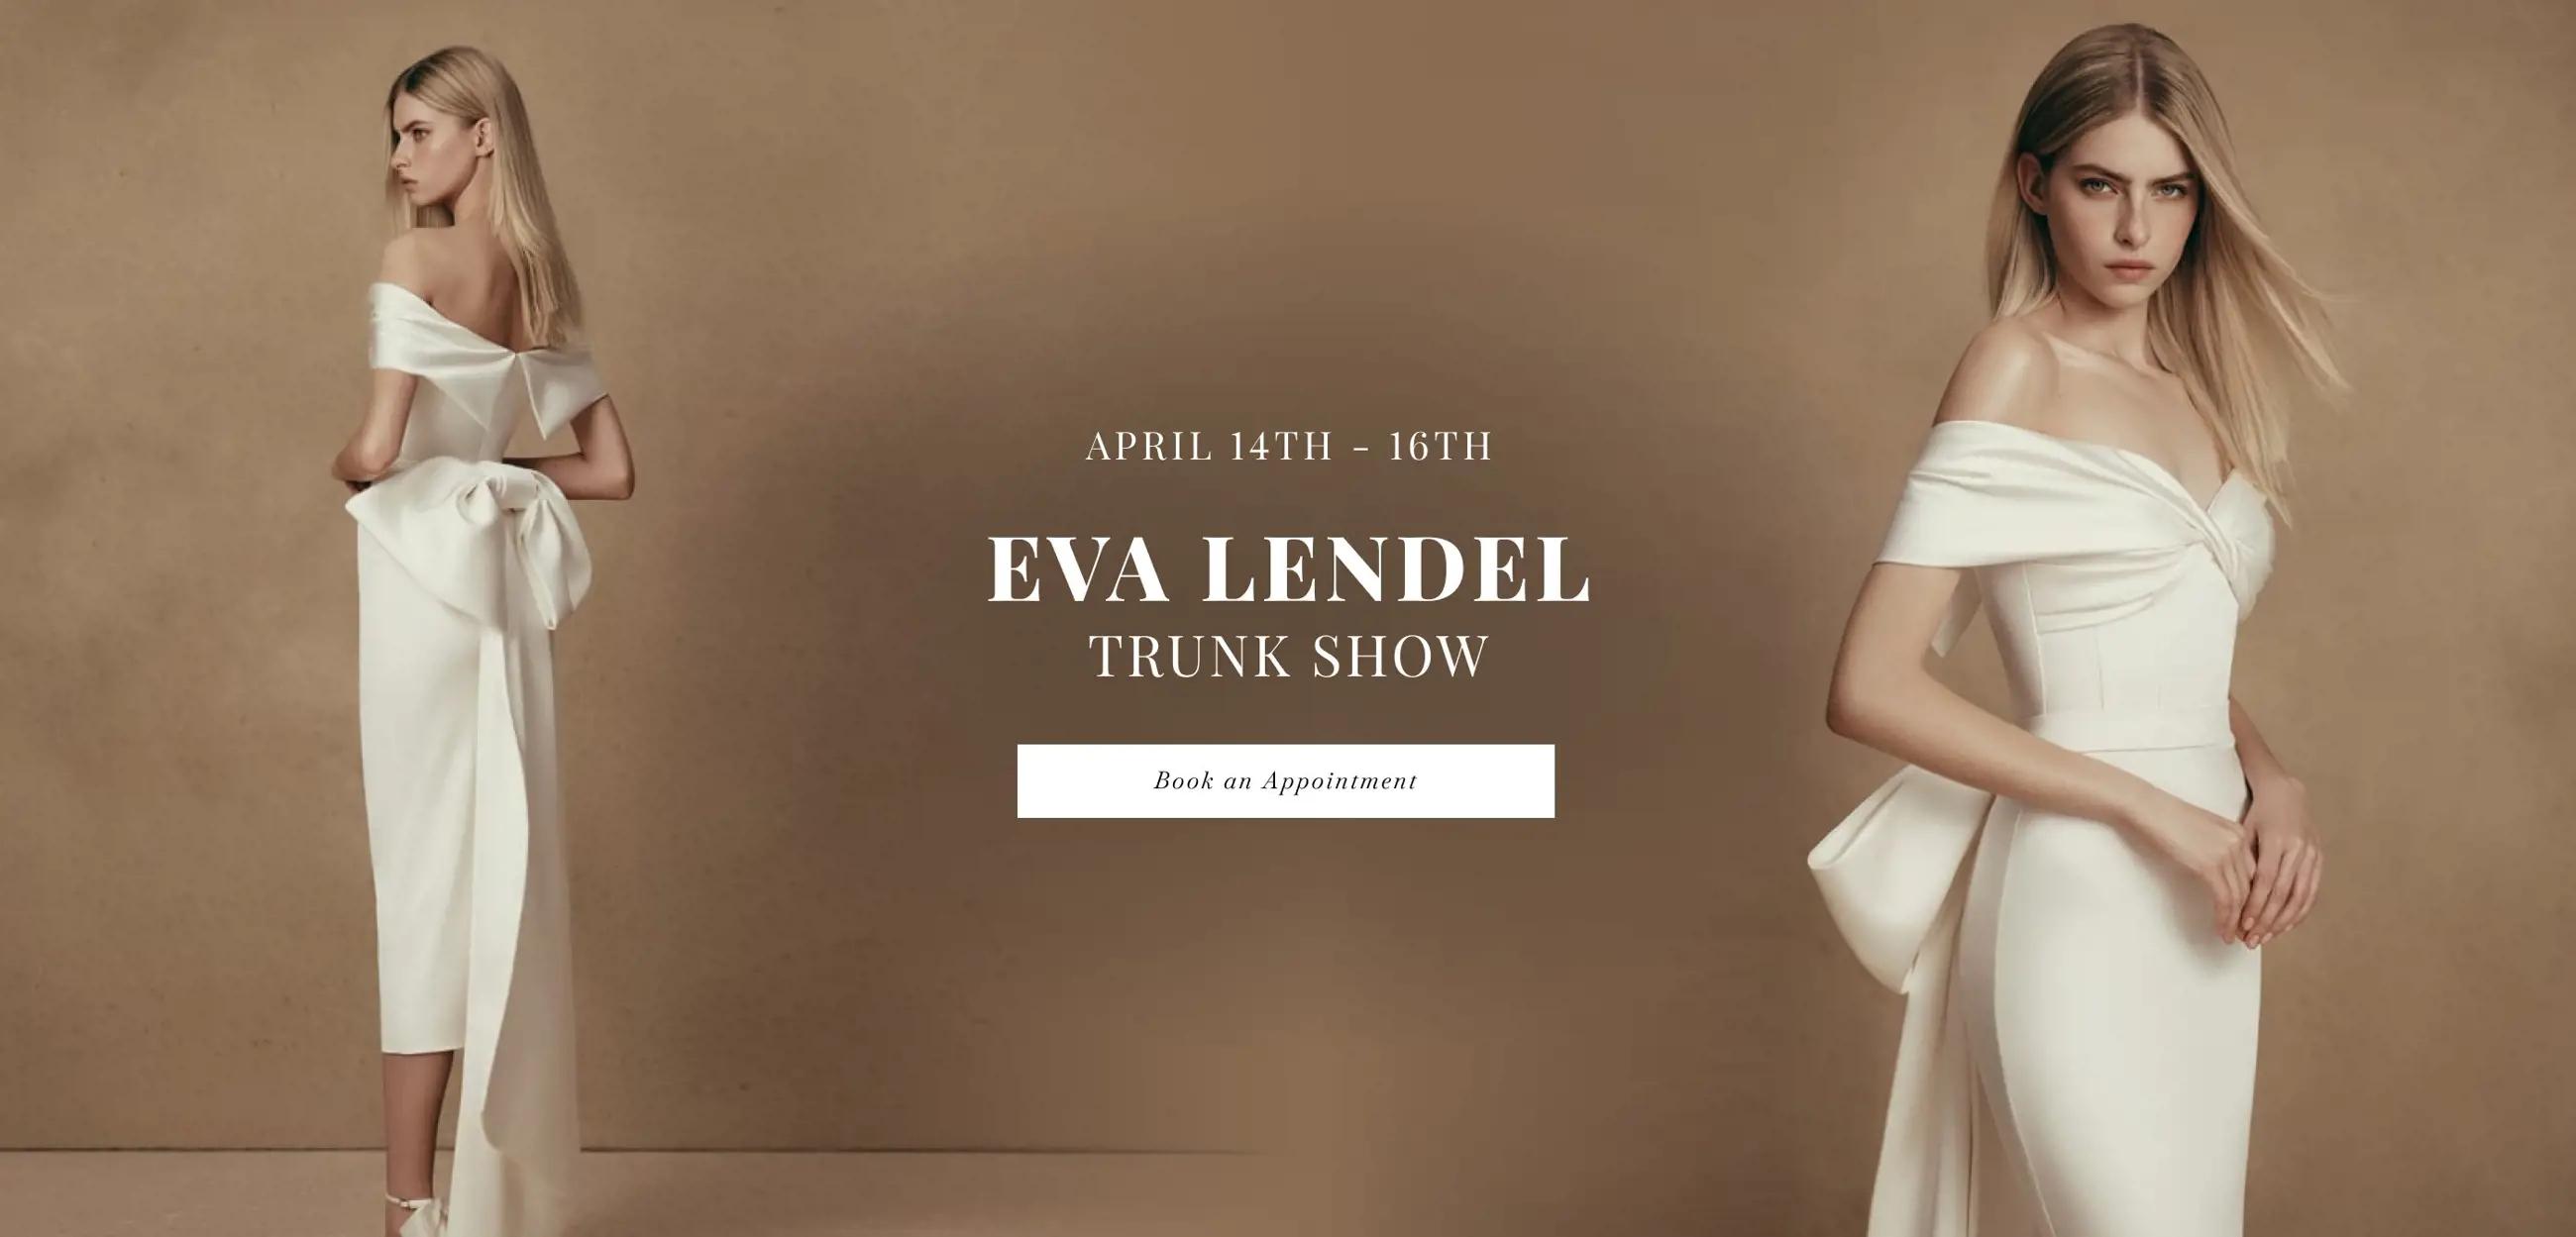 "Eva Lendel Trunk Show" banner for desktop